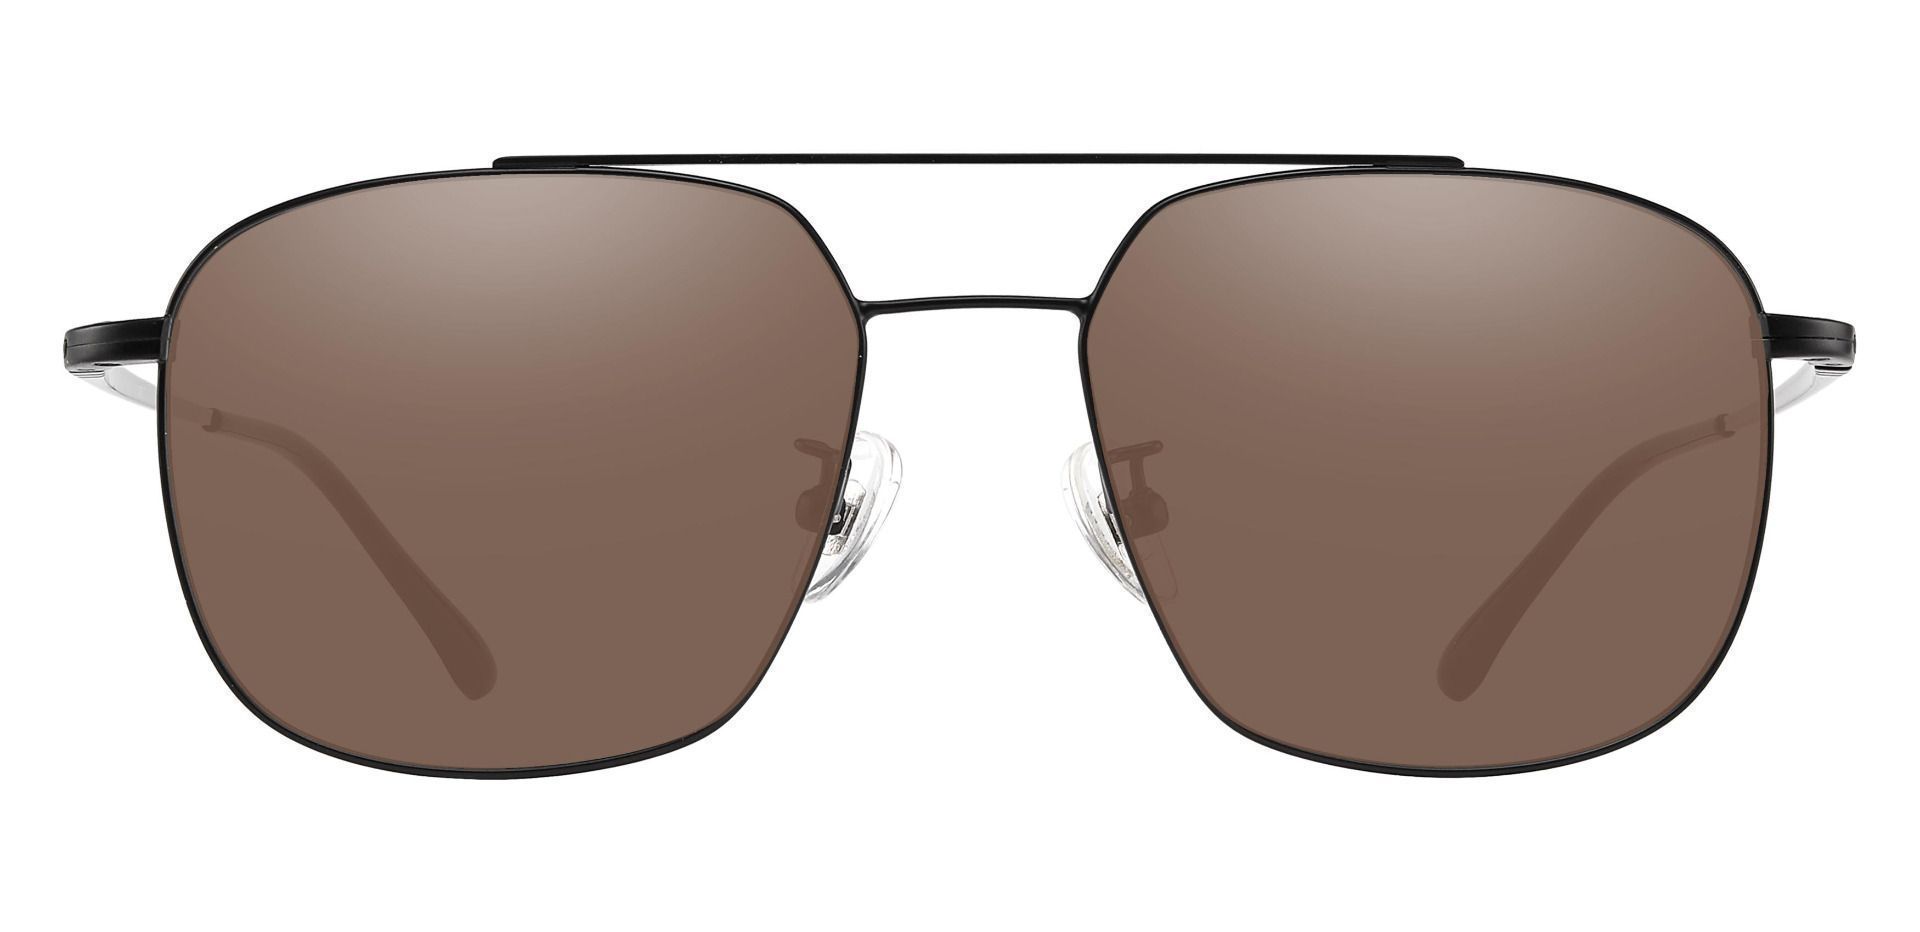 Trevor Aviator Reading Sunglasses - Black Frame With Brown Lenses